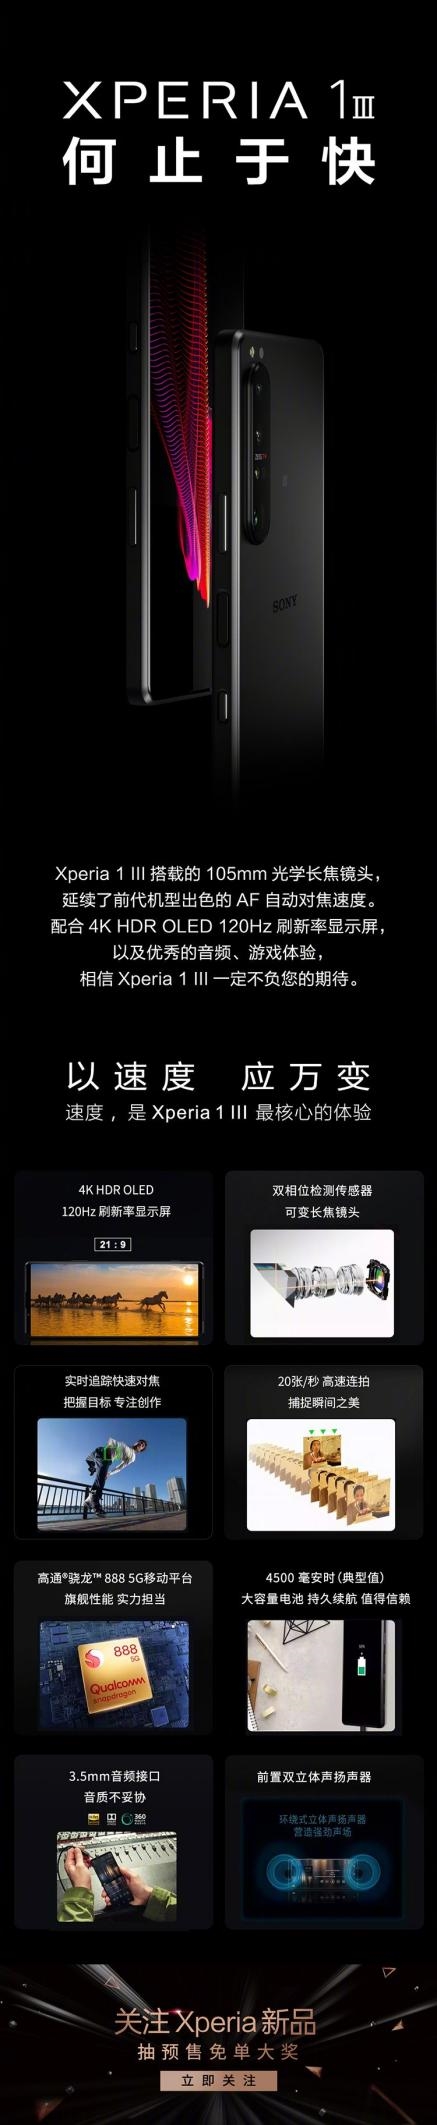 索尼新旗舰手机Xperia 1 III京东开启预约 5月20日国内发布